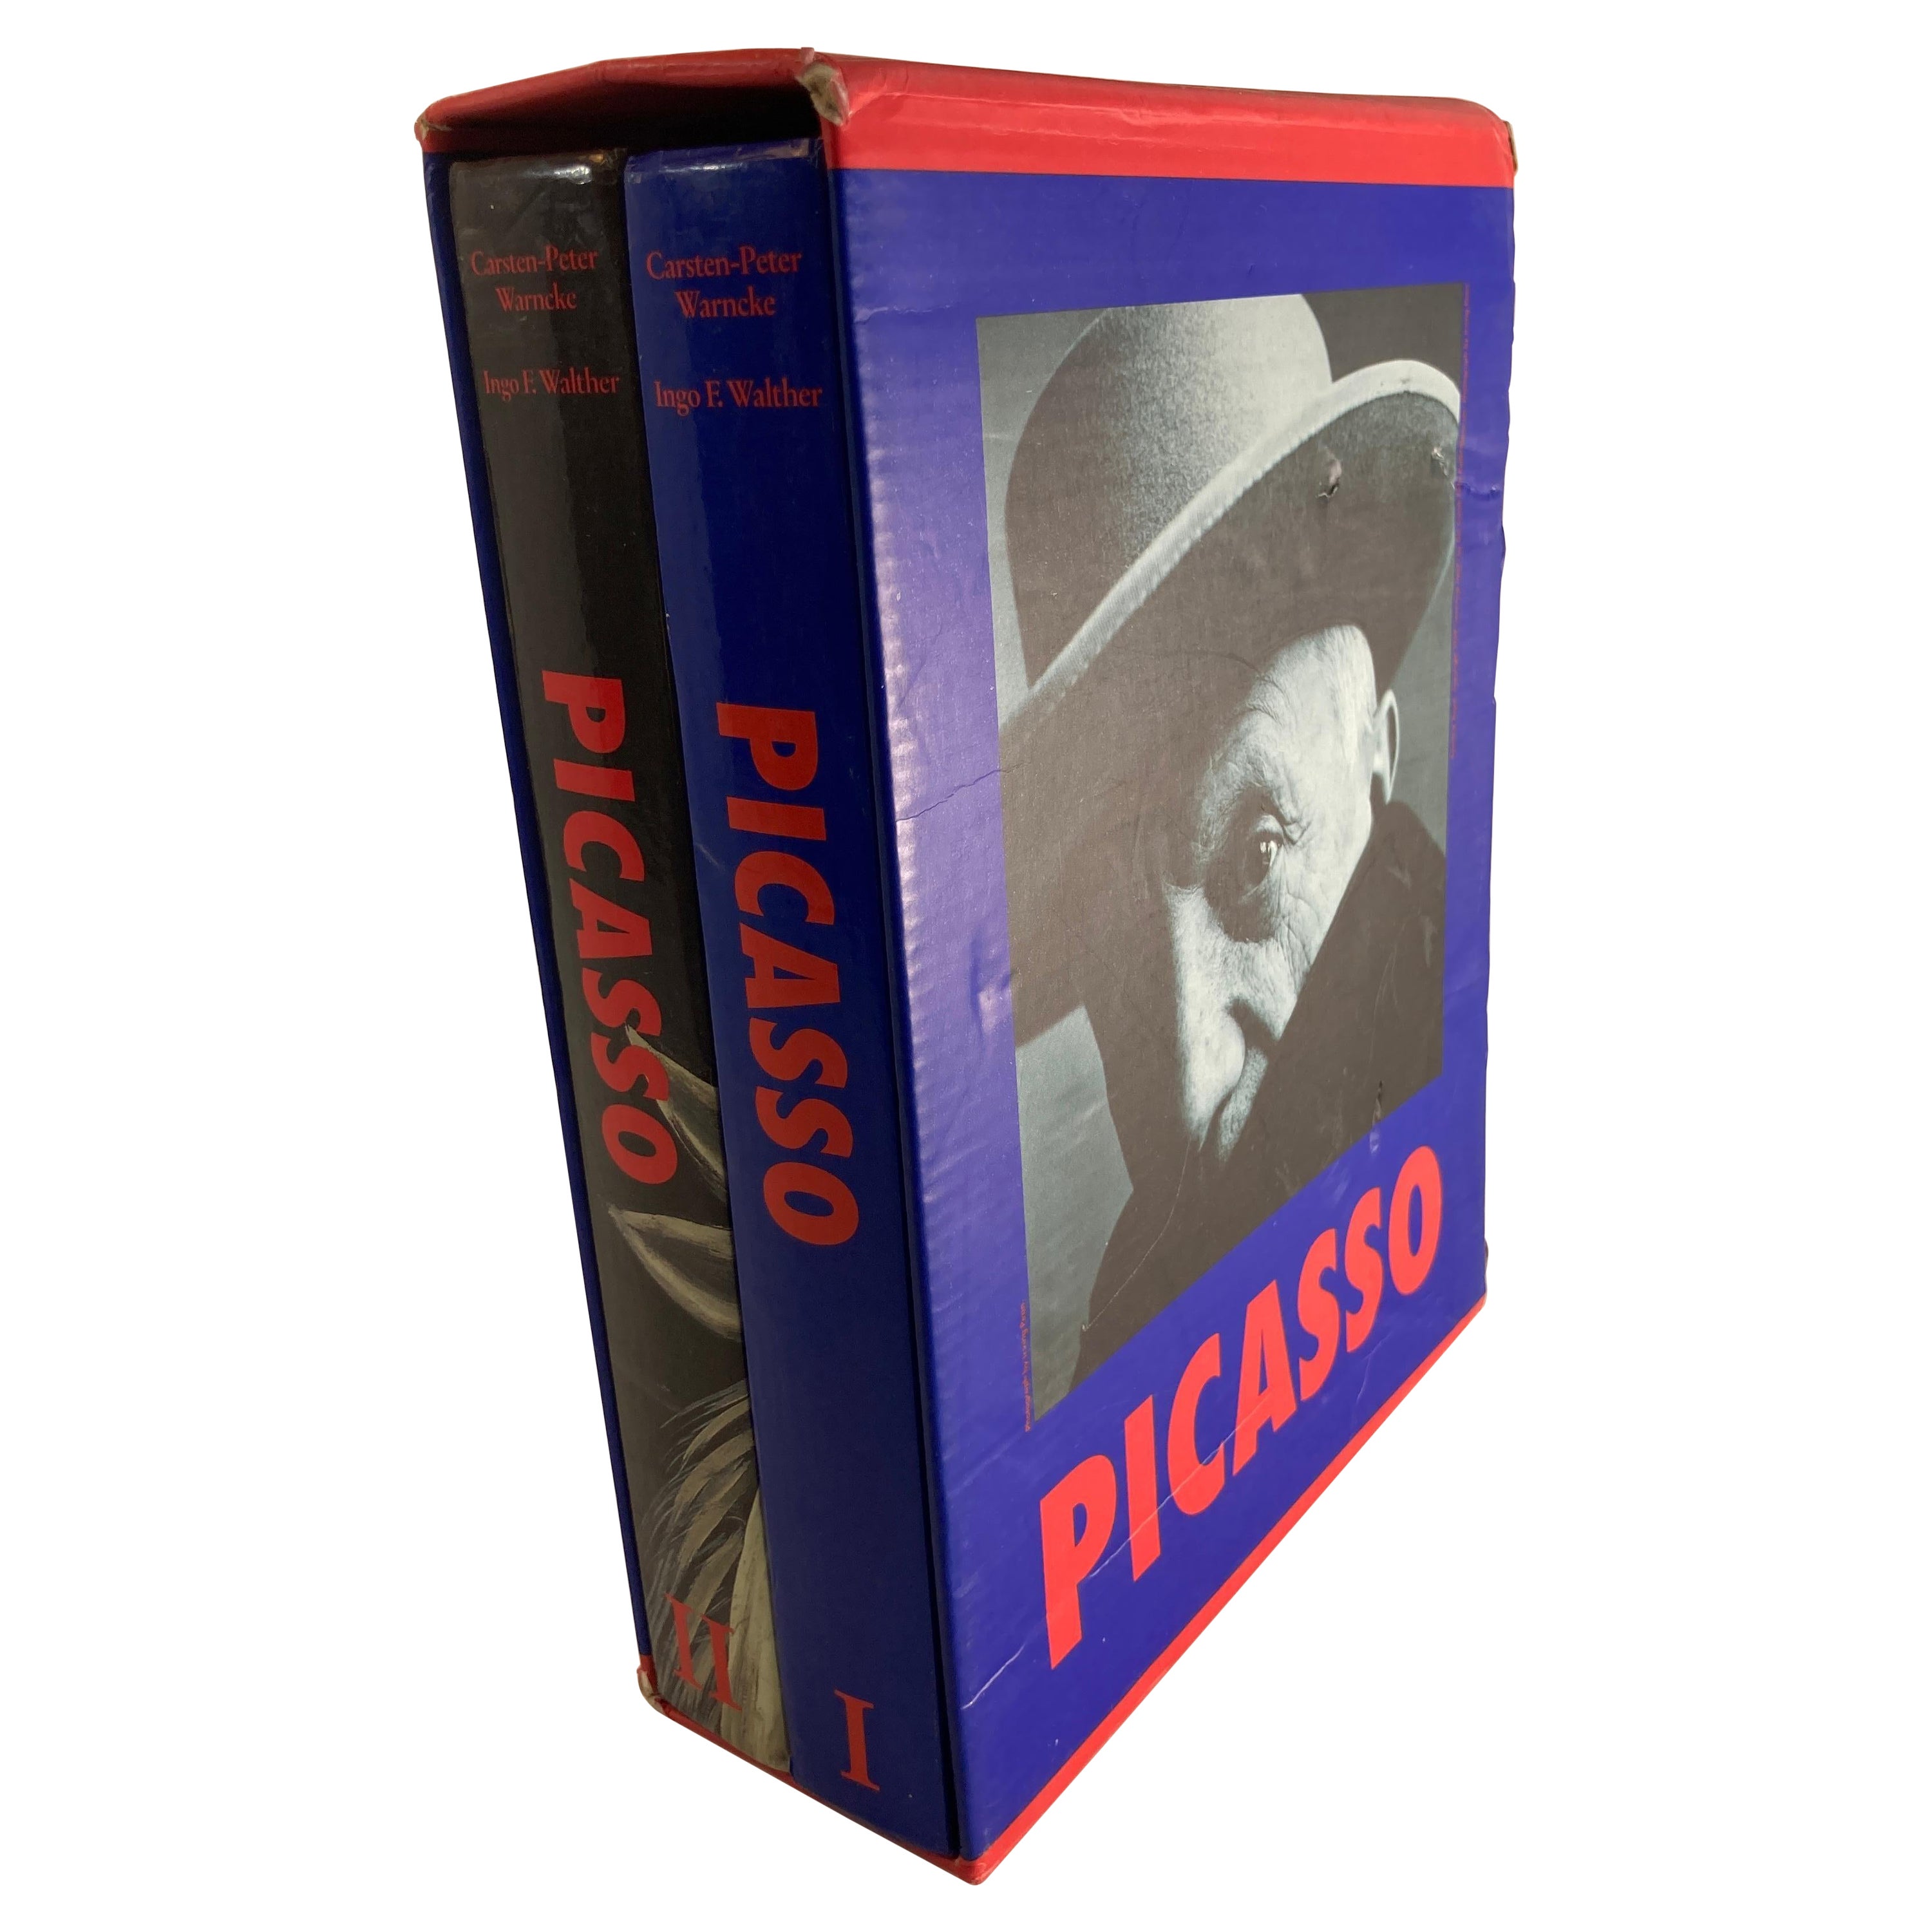 Picasso 2 Volume Box Set Carsten-Peter Warncke Pub Benedikt Taschen 1995 For Sale